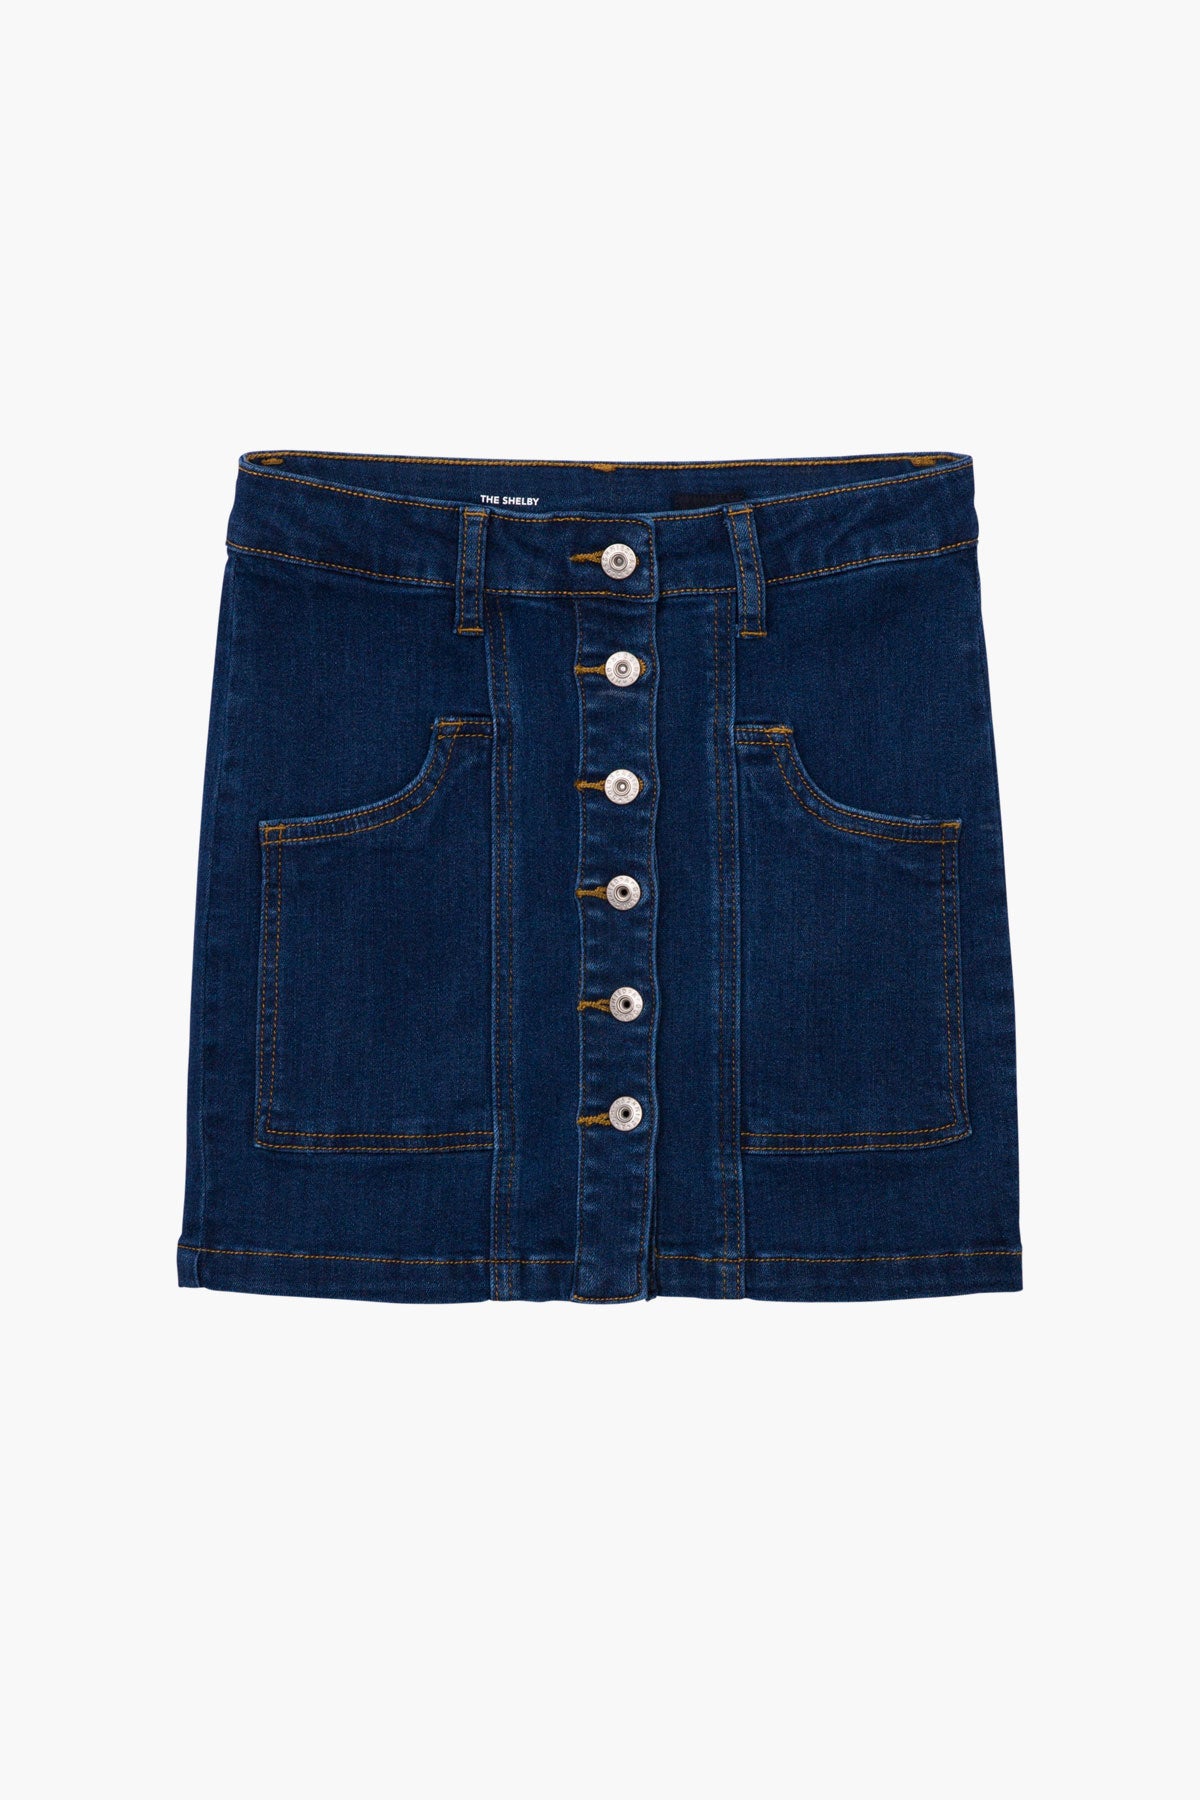 AG Jeans Kids Colette Girls Jean Skirt – Mini Ruby